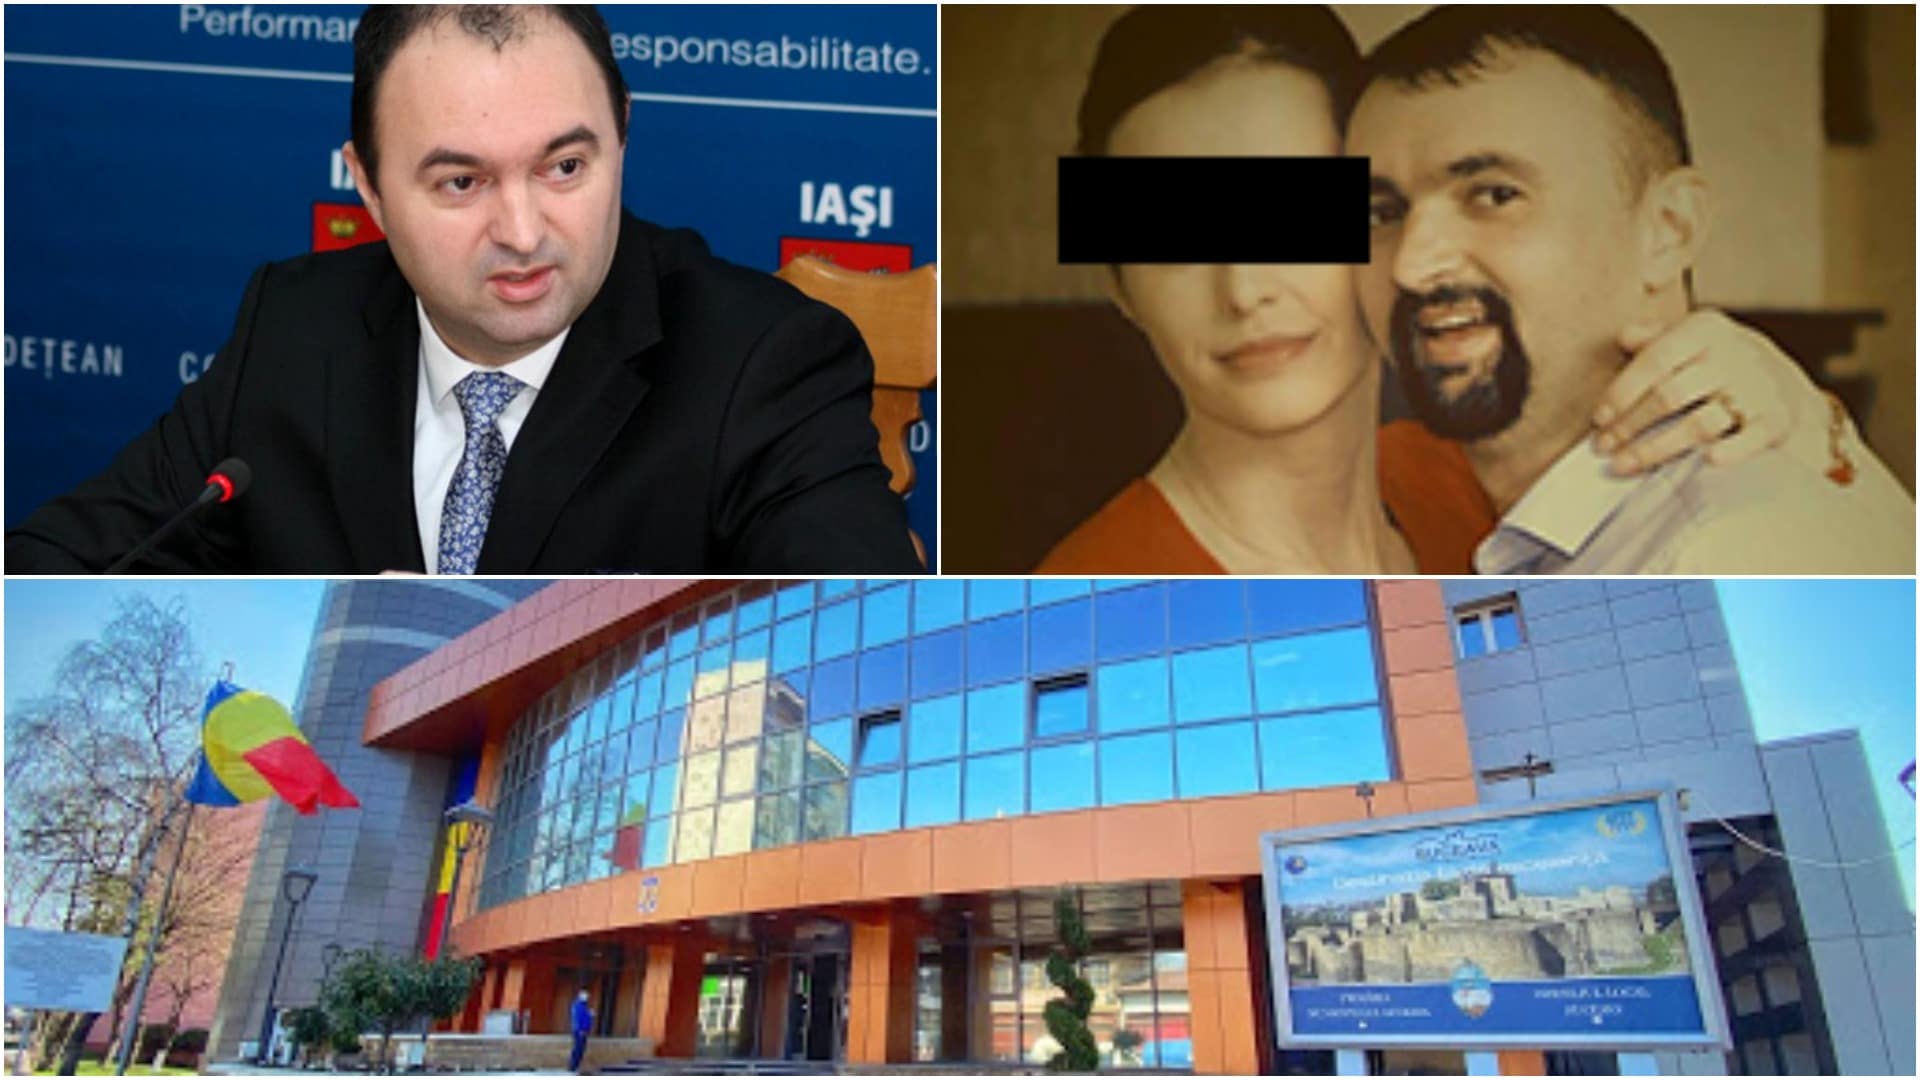 A ieșit pe ușa din dos la IAȘI dar a intrat pe ușa din față la SUCEAVA! Implicațiile familiei ADOMNIȚEI la PRIMĂRIA SUCEAVA - News Moldova